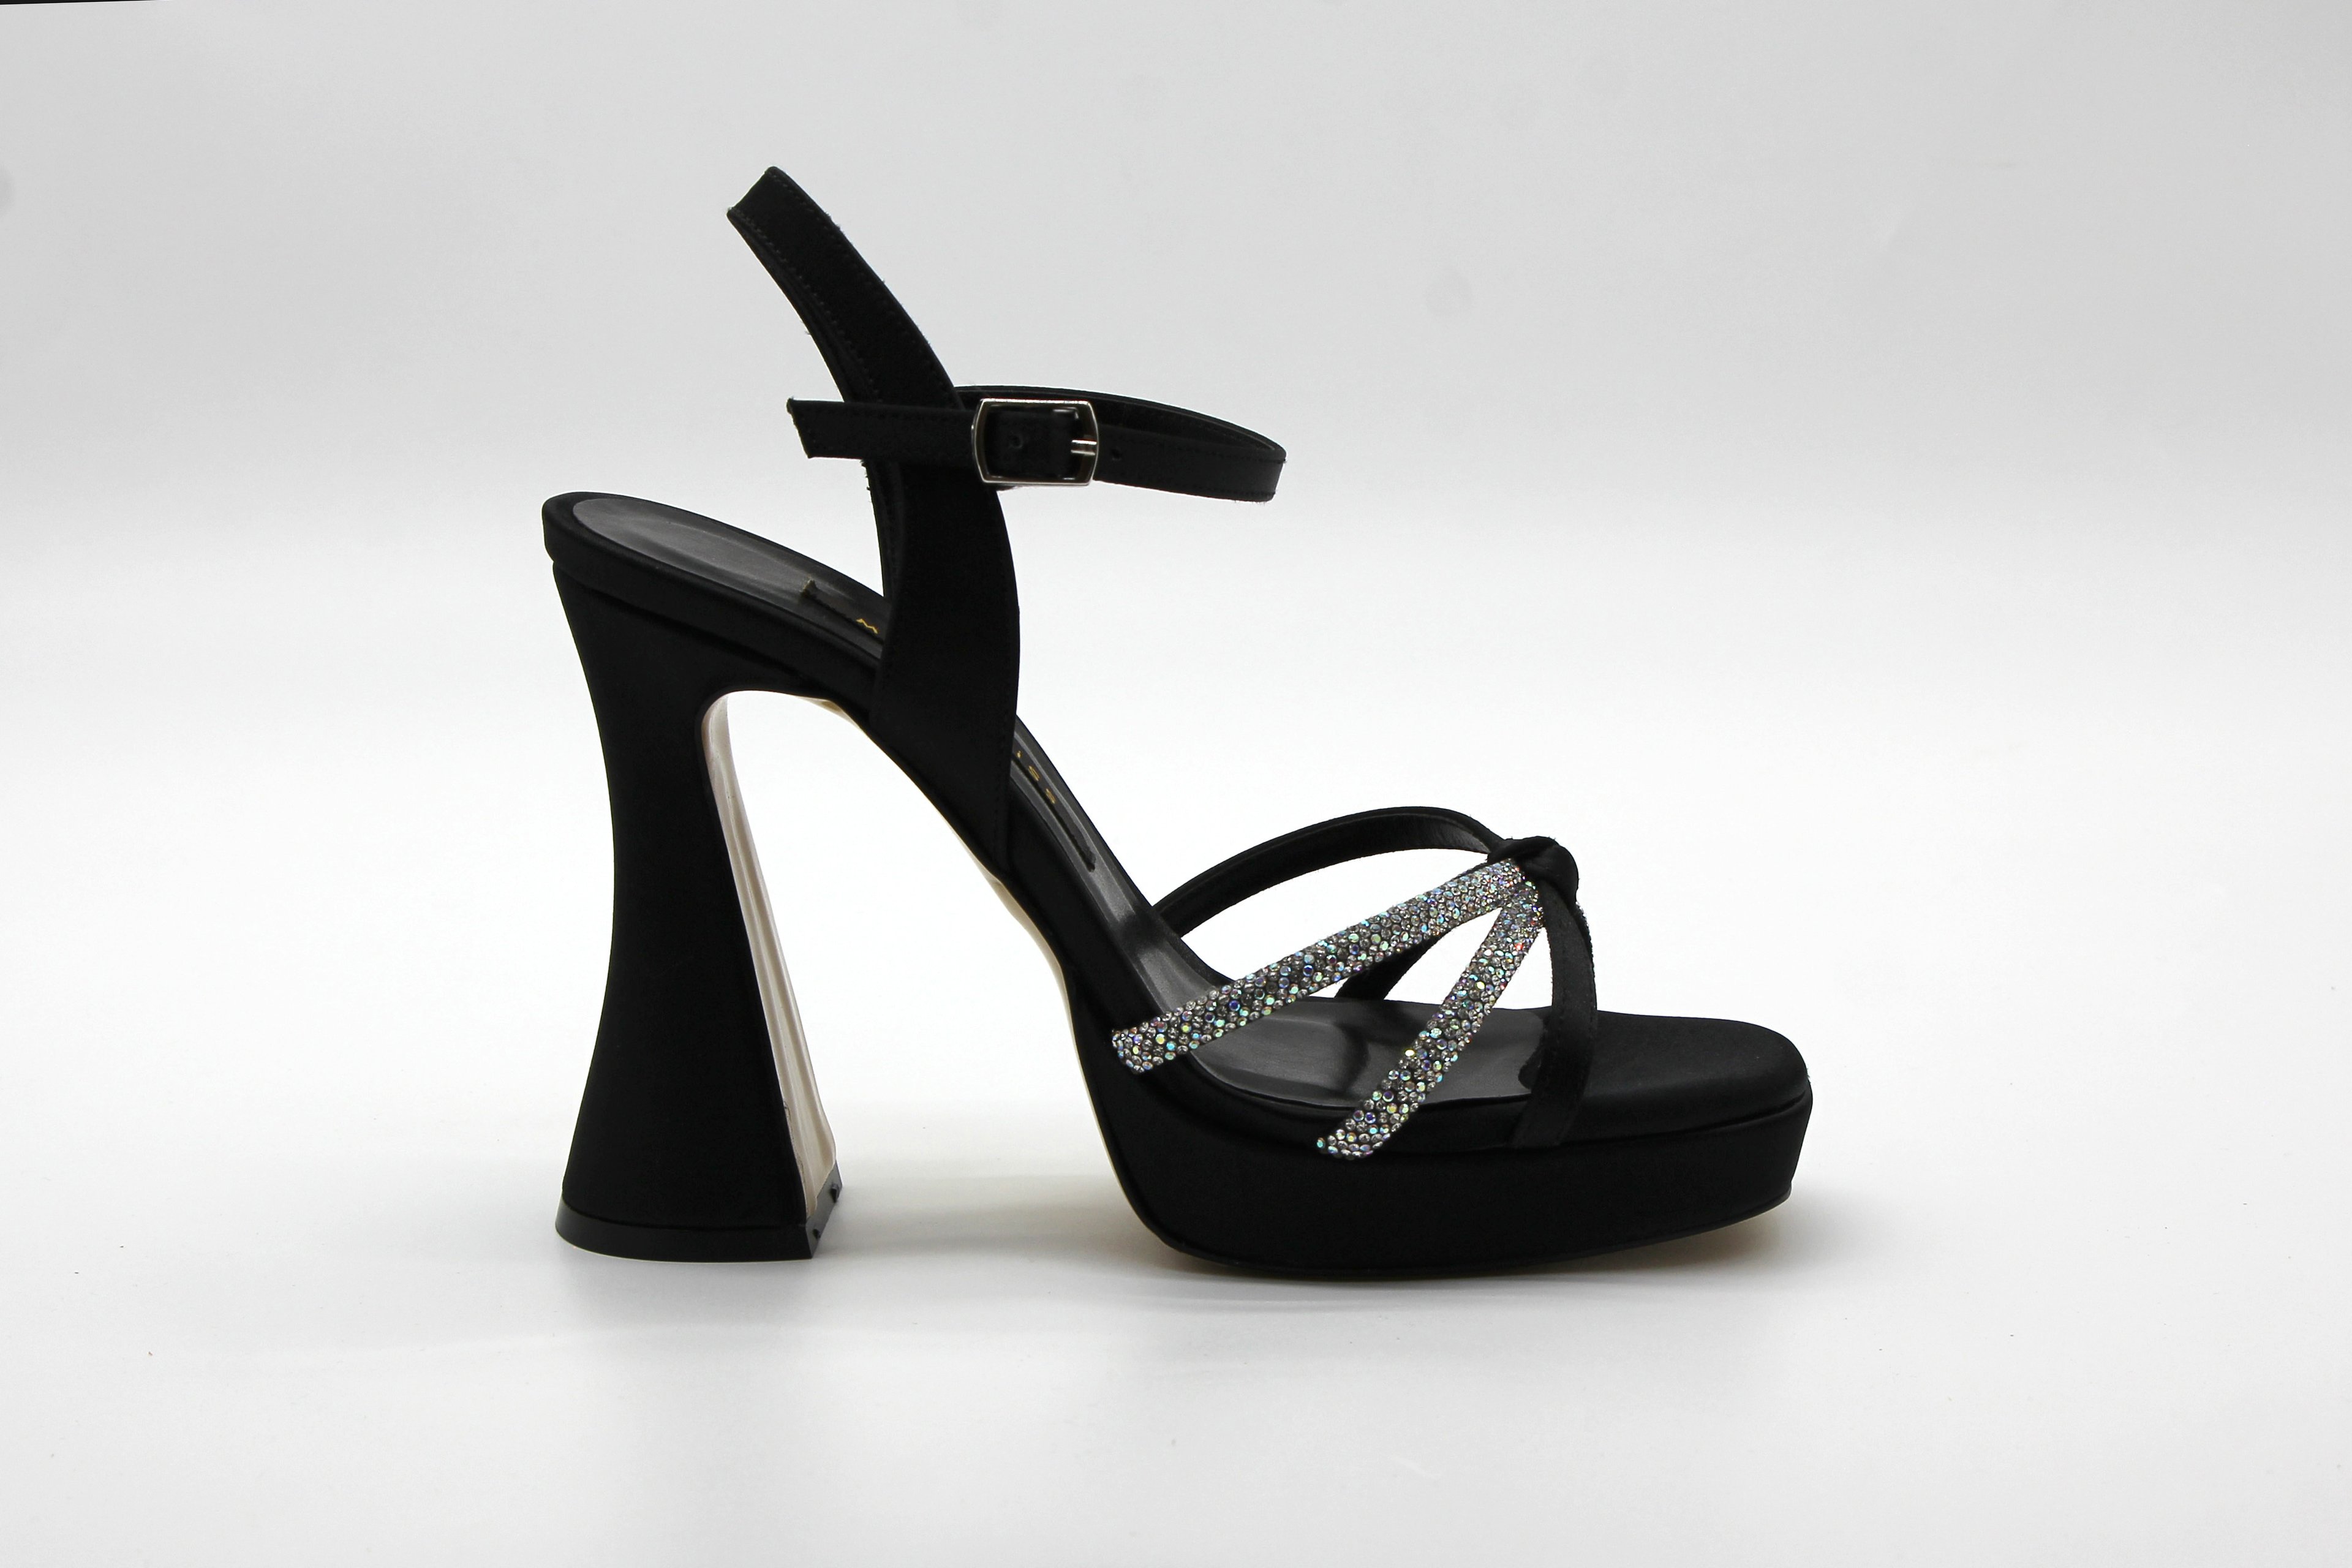 Marcamiss Kadın Platform Taşlı Sandalet - Siyah